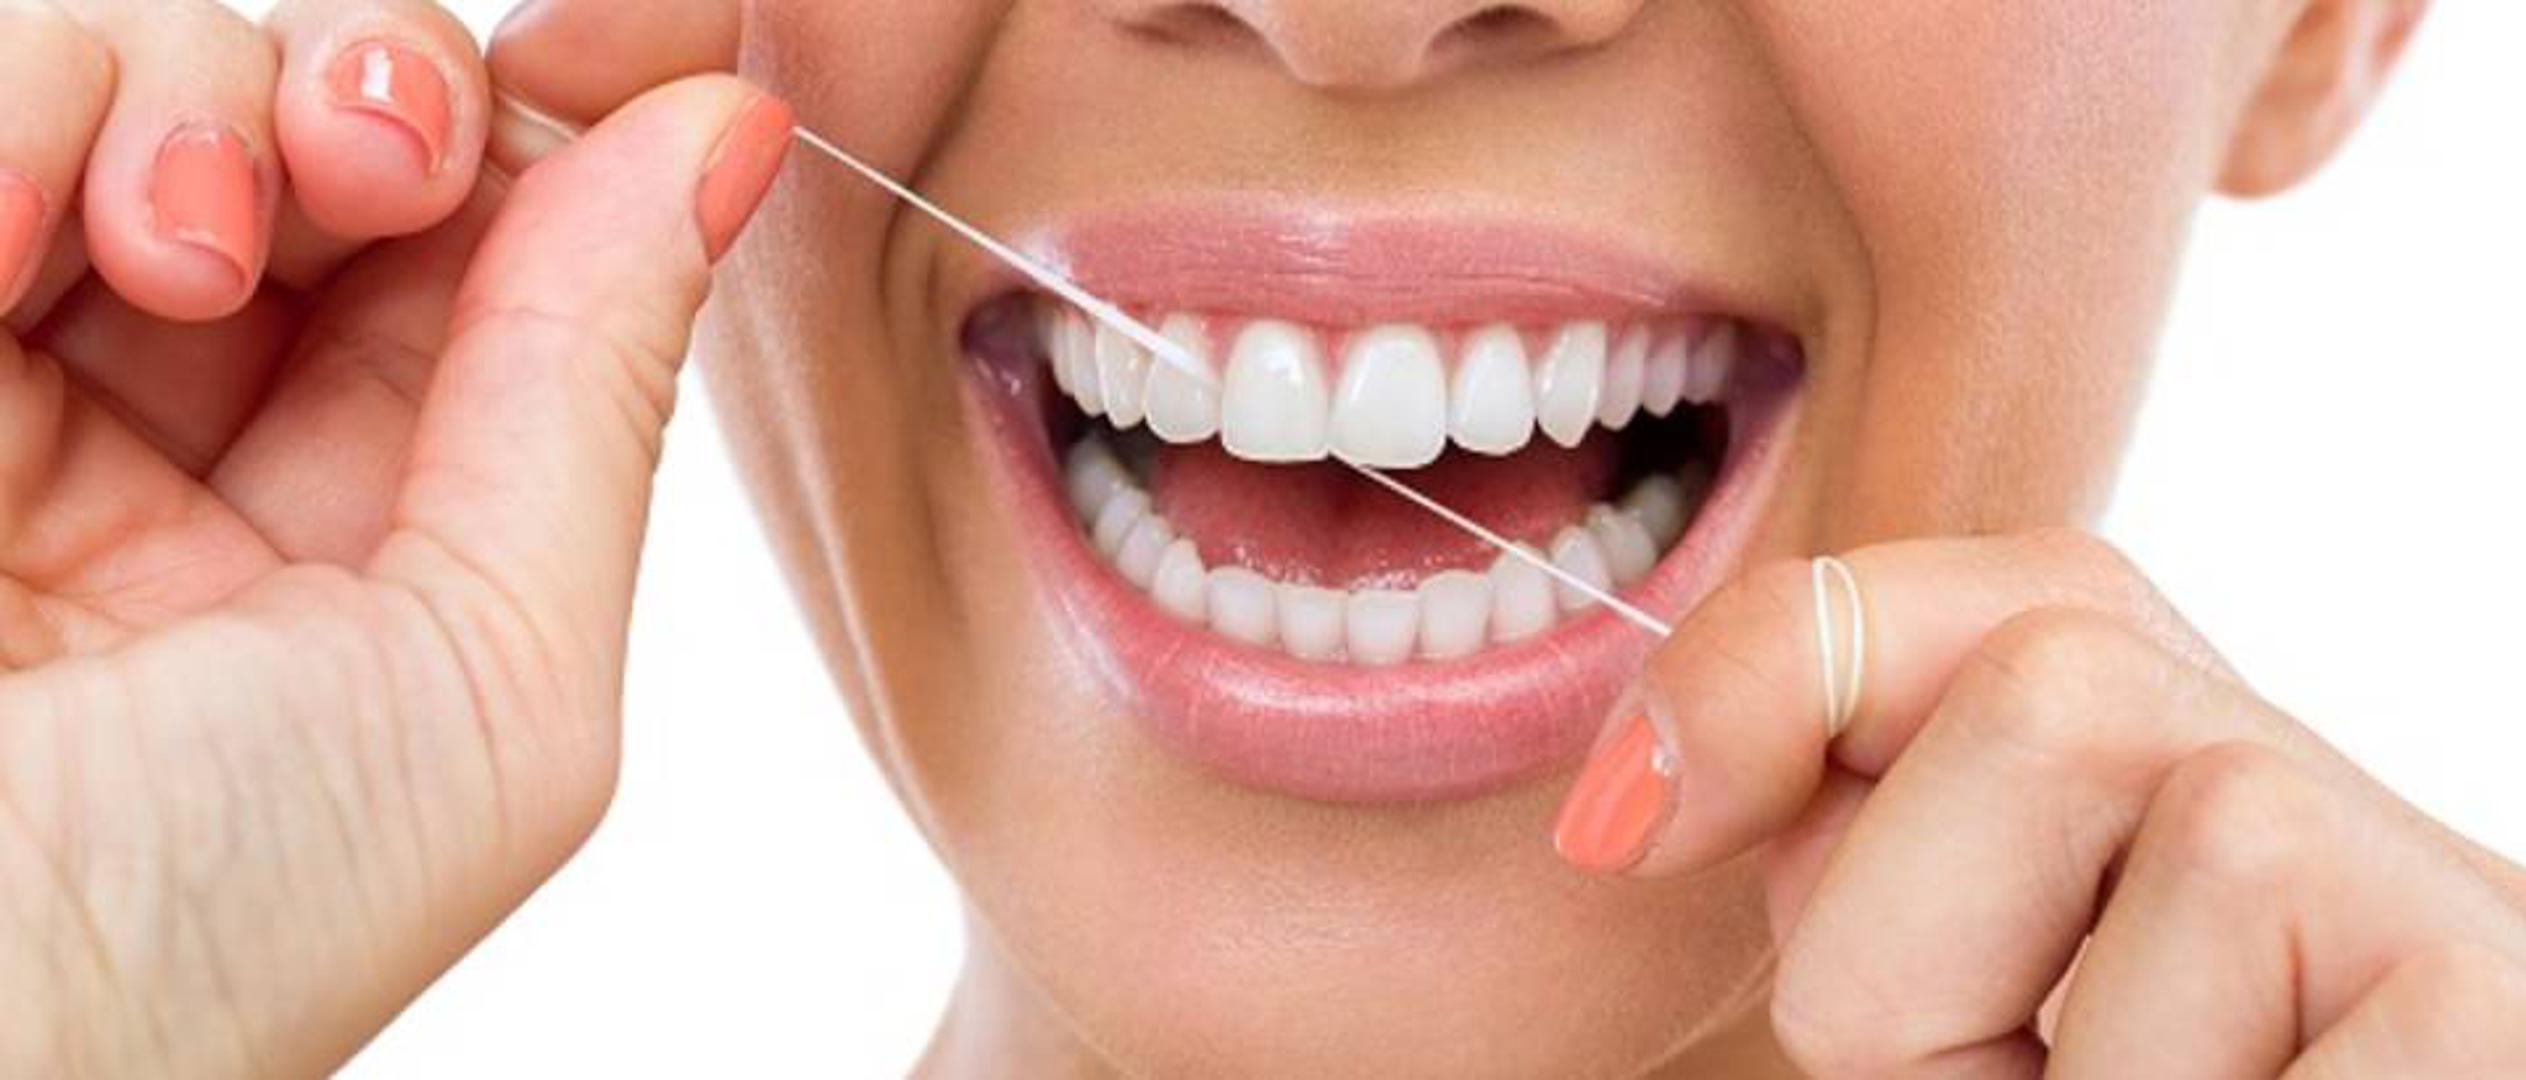 Stomatolozi savjetuju kako je najbolje zube oprati odmah nakon buđenja, odnosno prije konzumiranja doručka. Na taj ćete se način riješiti naslaga koje utječu na stvaranje plaka i bakterija. Ako planirate zube oprati nakon doručka, tada je poželjno da imate na umu kako biste svakako trebali pričekati najmanje 40 minuta nakon jela da operete zube.